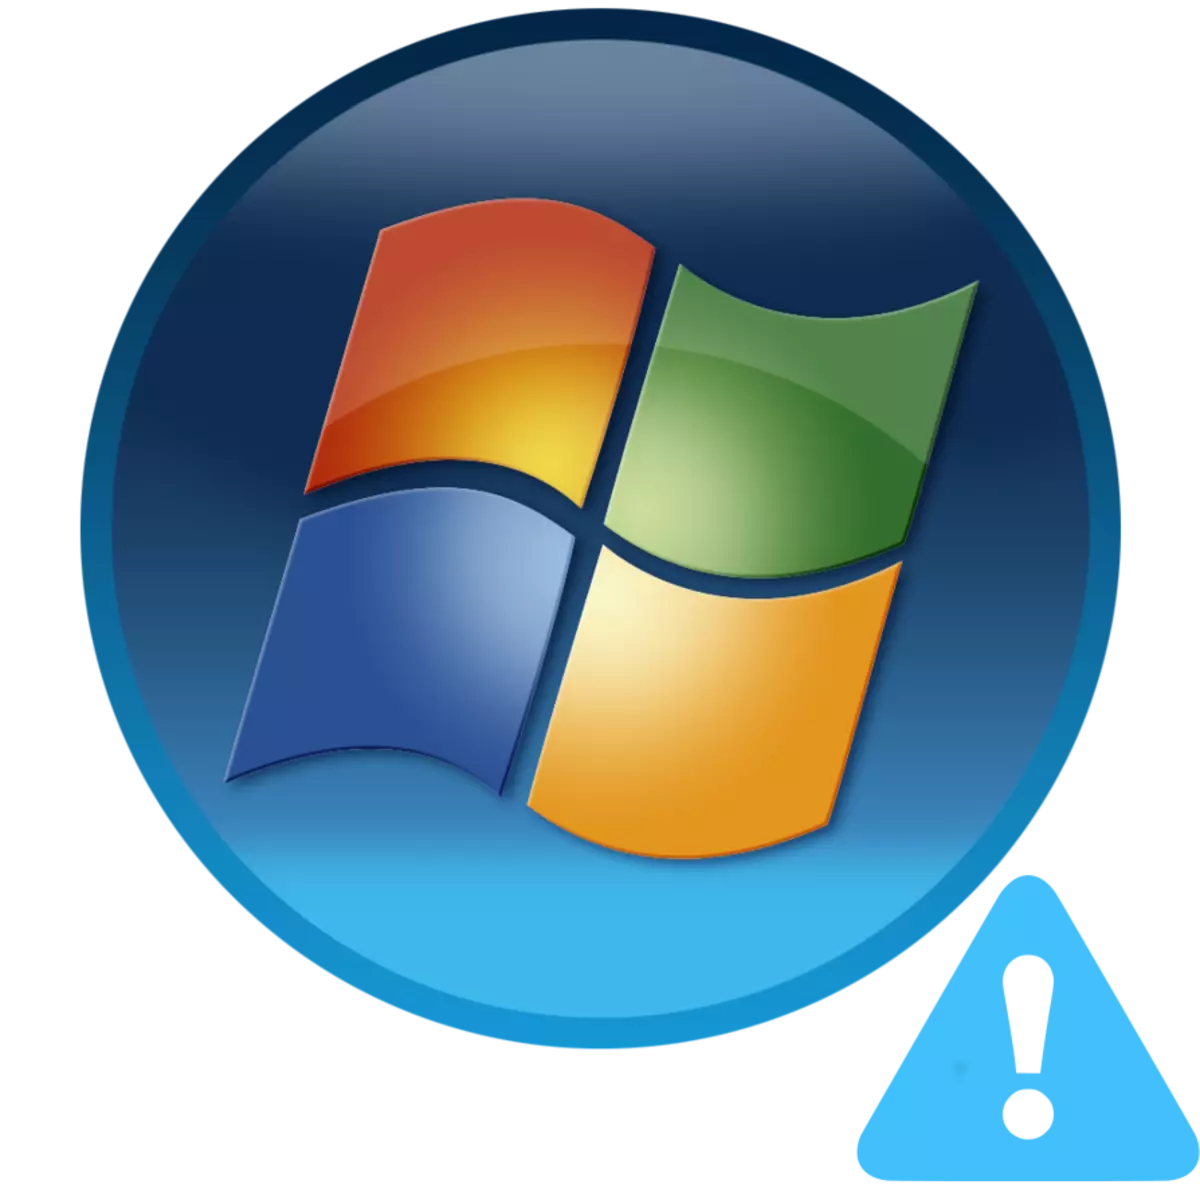 Bootmgn boot hija nieqsa fil-Windows 7